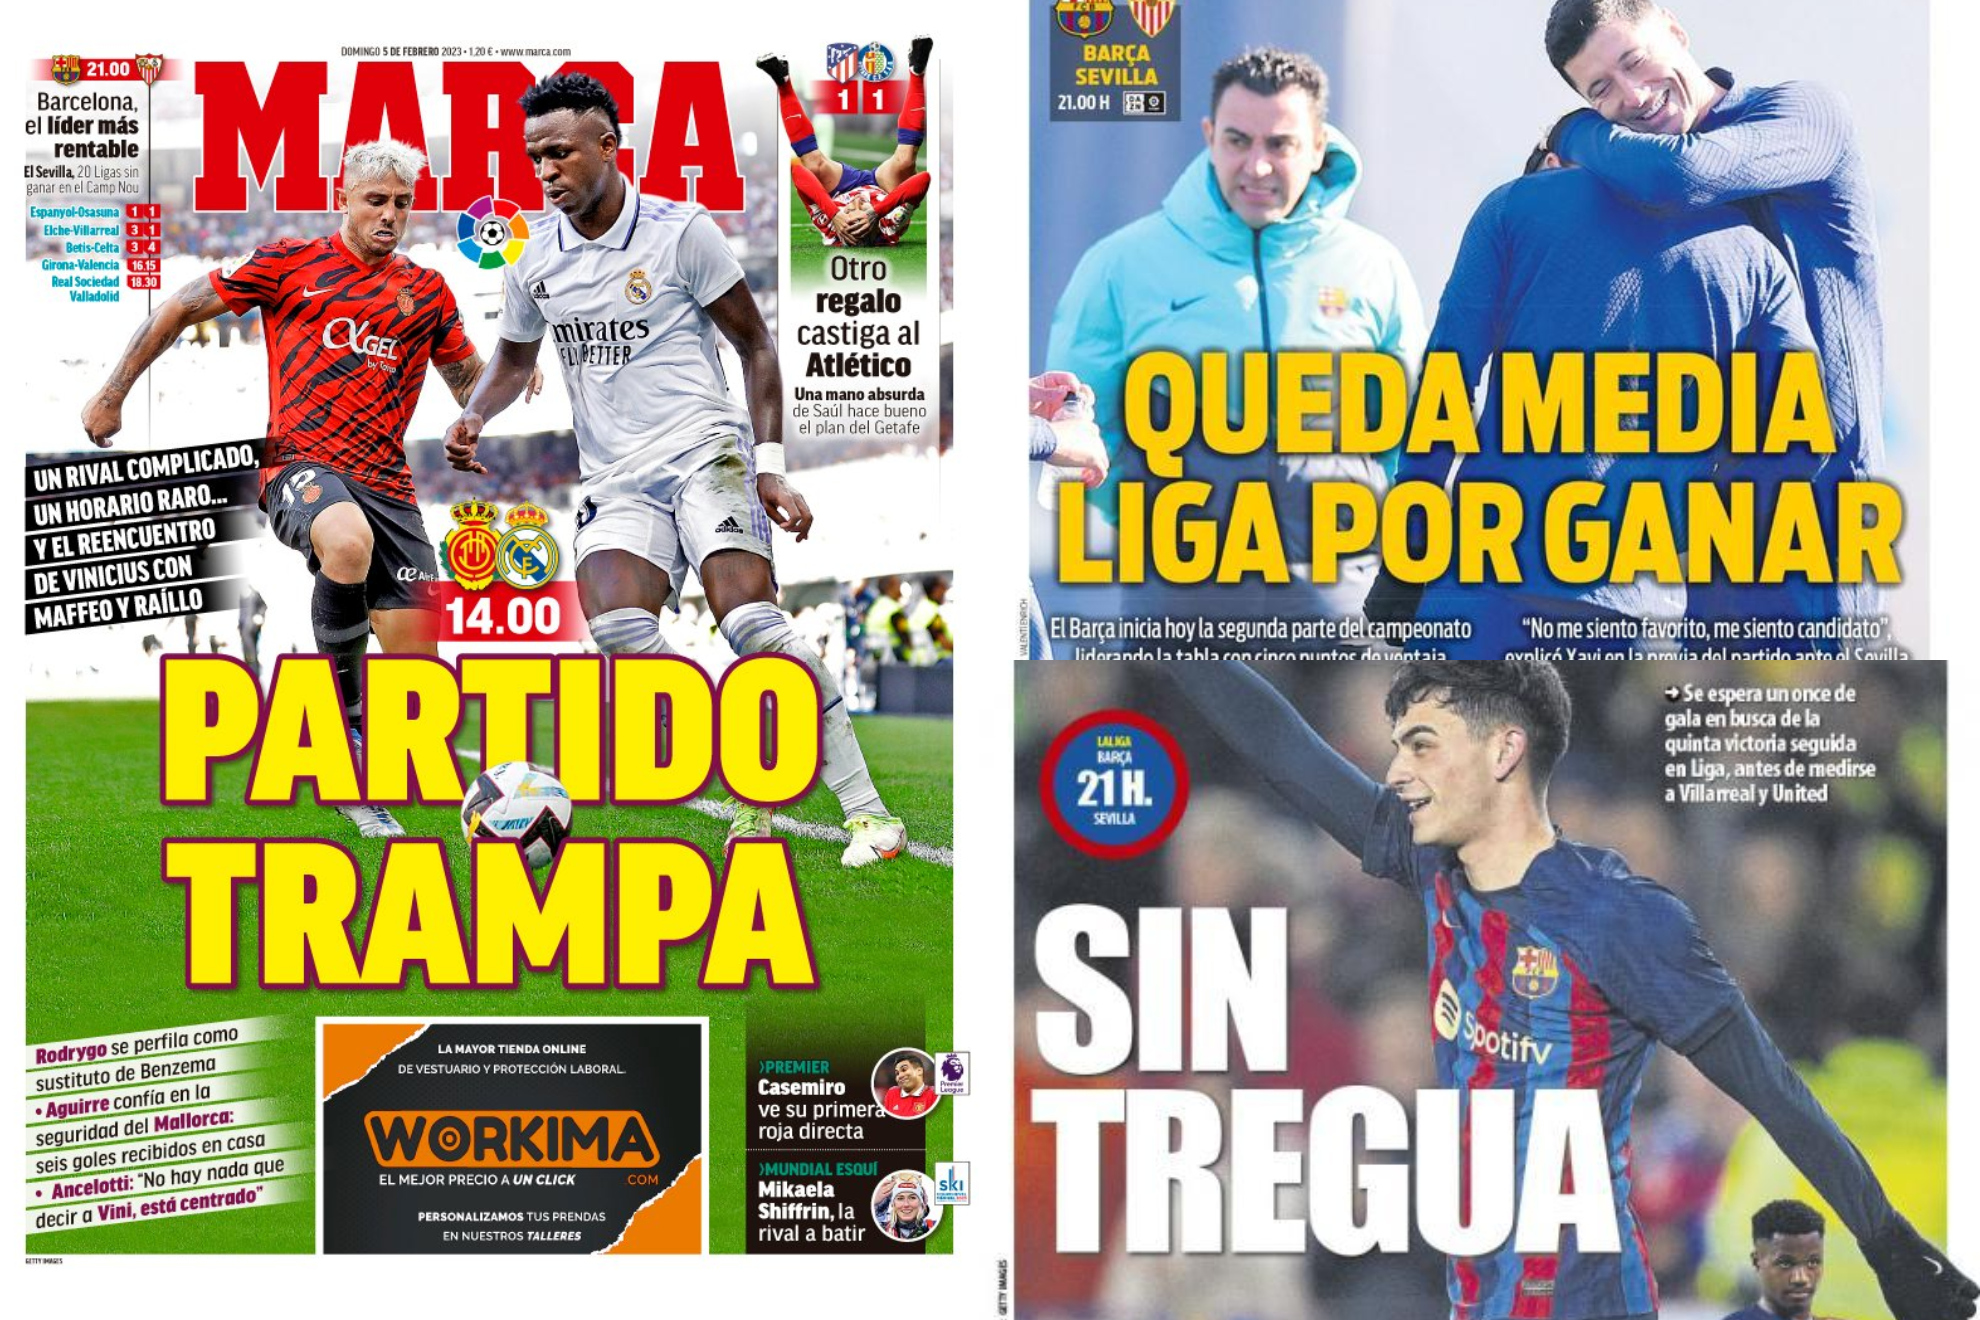 Las portadas: el partido trampa del Madrid en Mallorca, el del Barça...